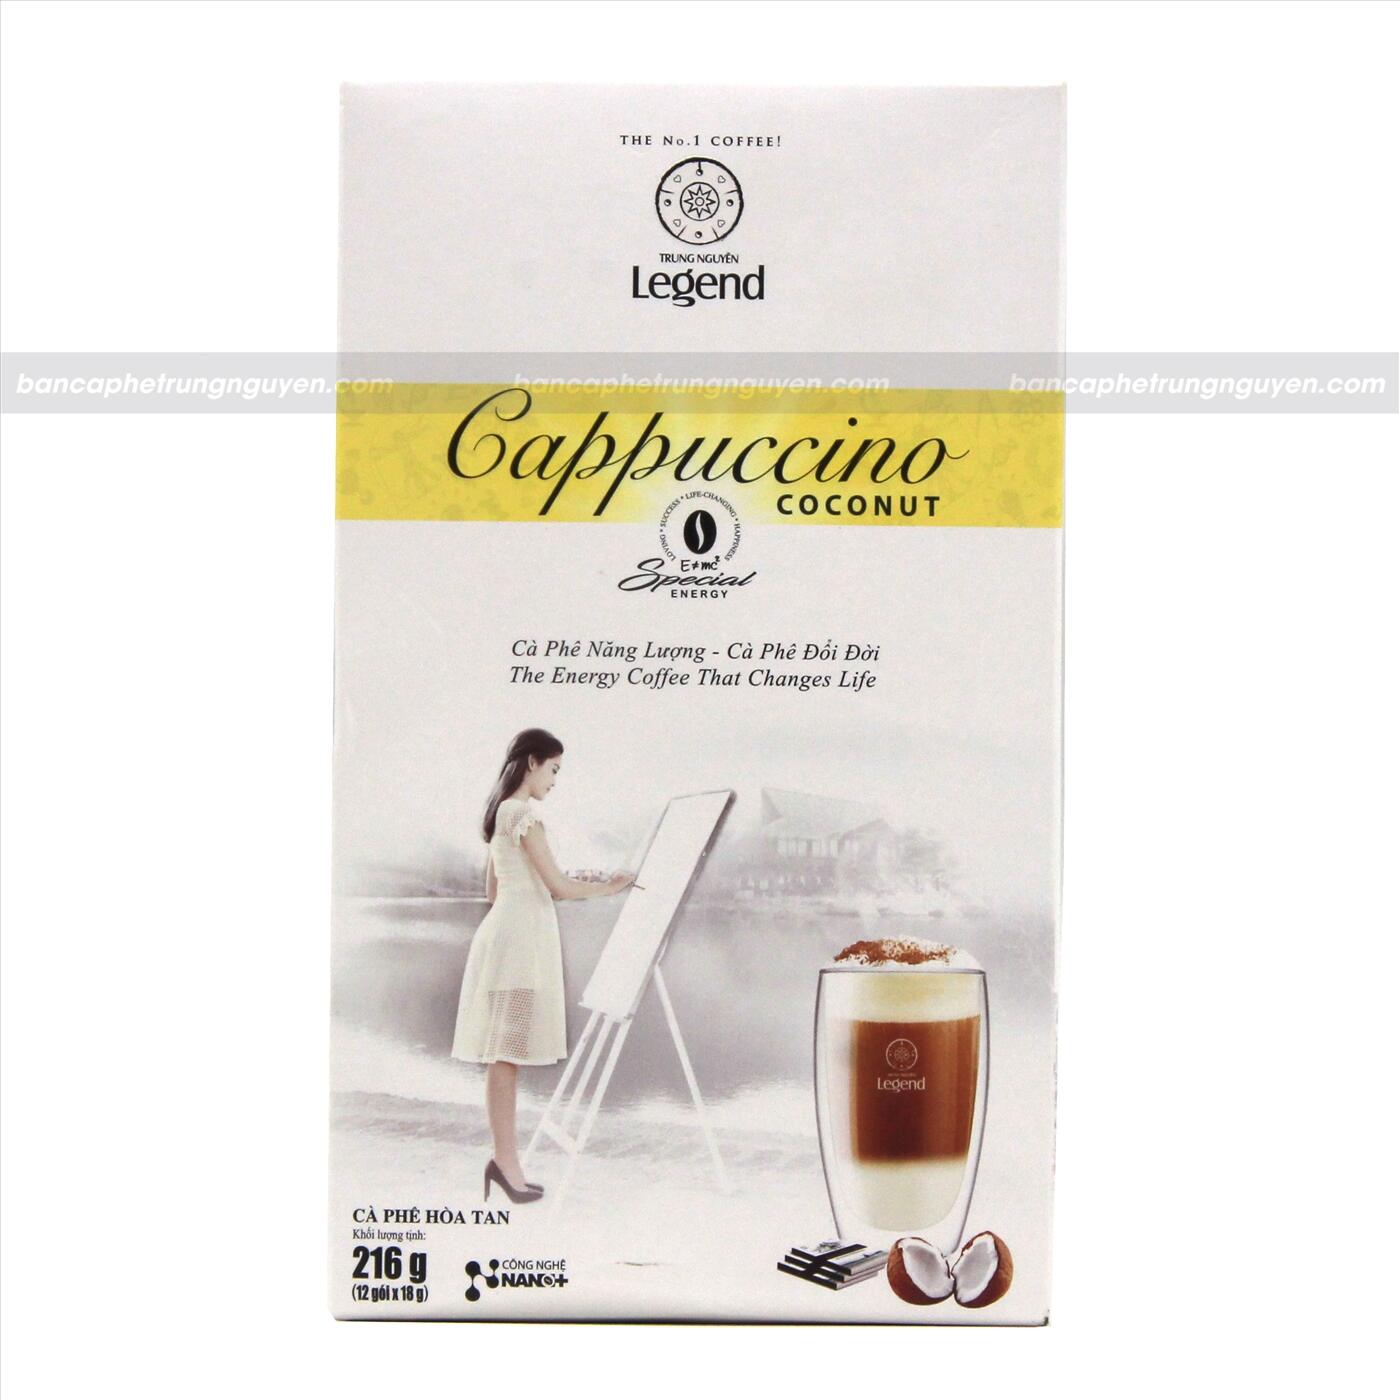 Cà Phê Hòa Tan G7 Trung Nguyên Legend - Cappuccino hương Coconut